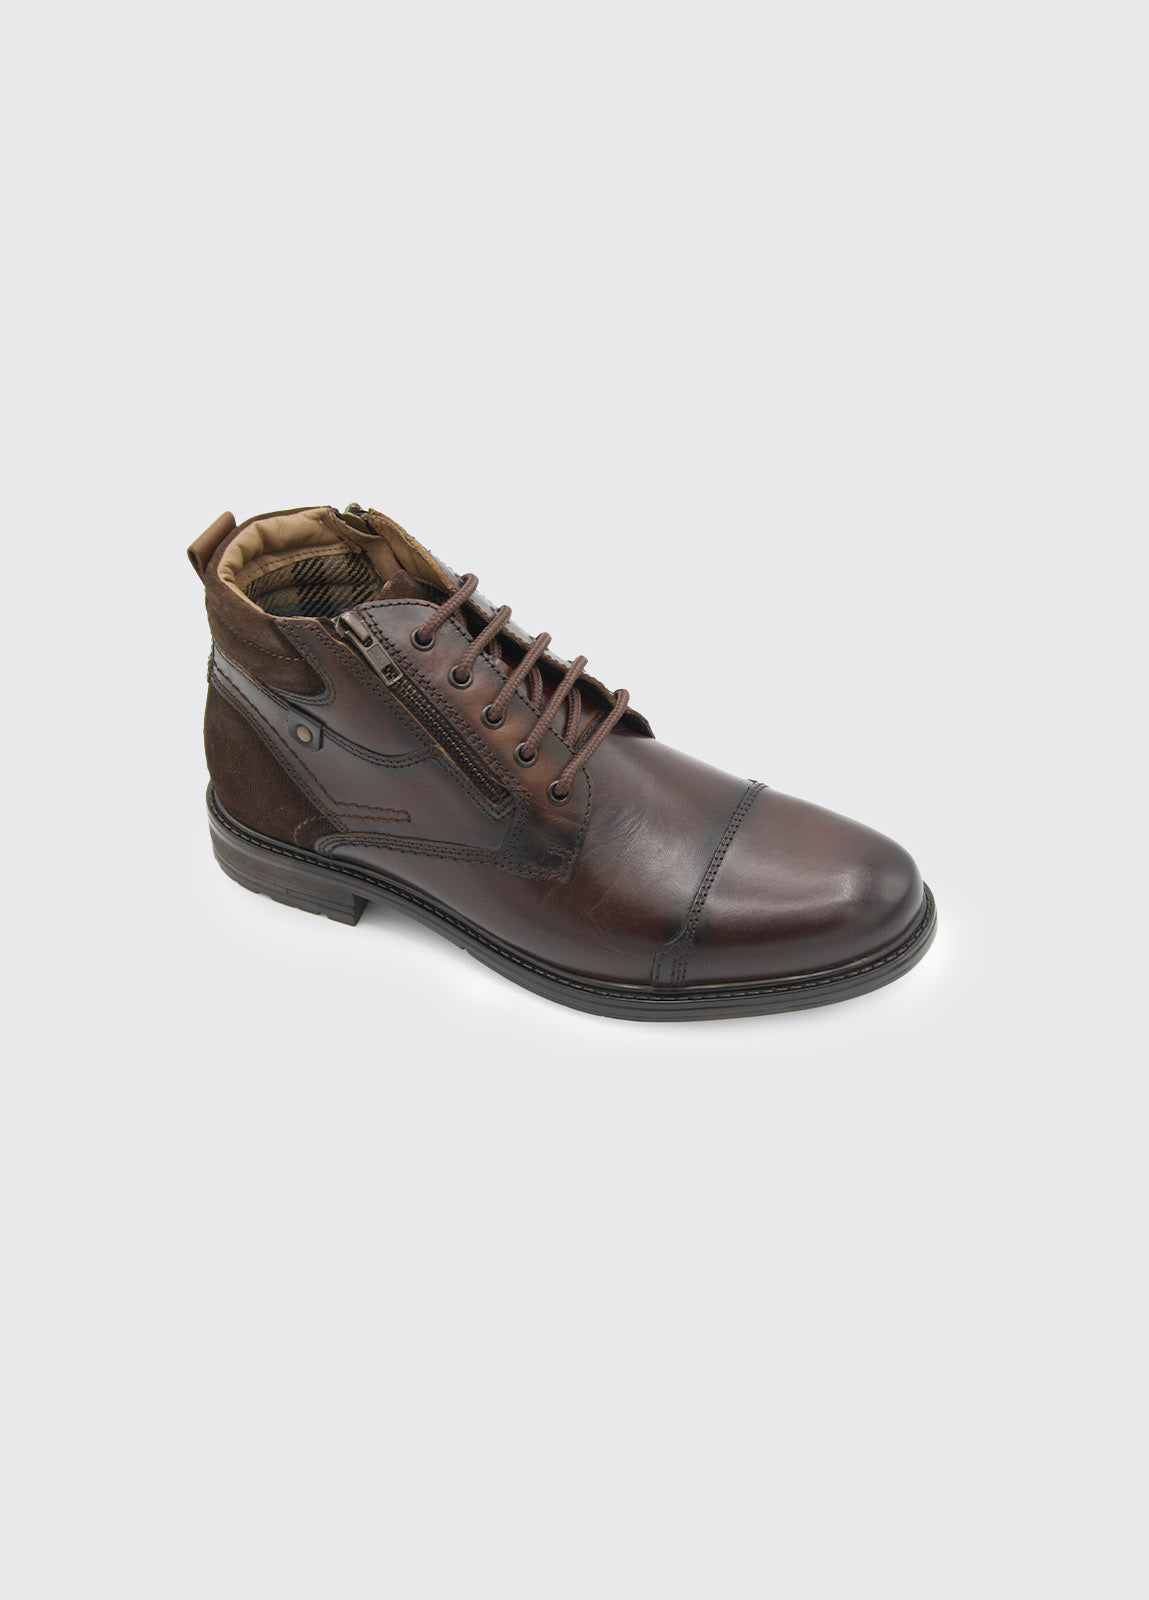 Men's Swatch Brown Boot-